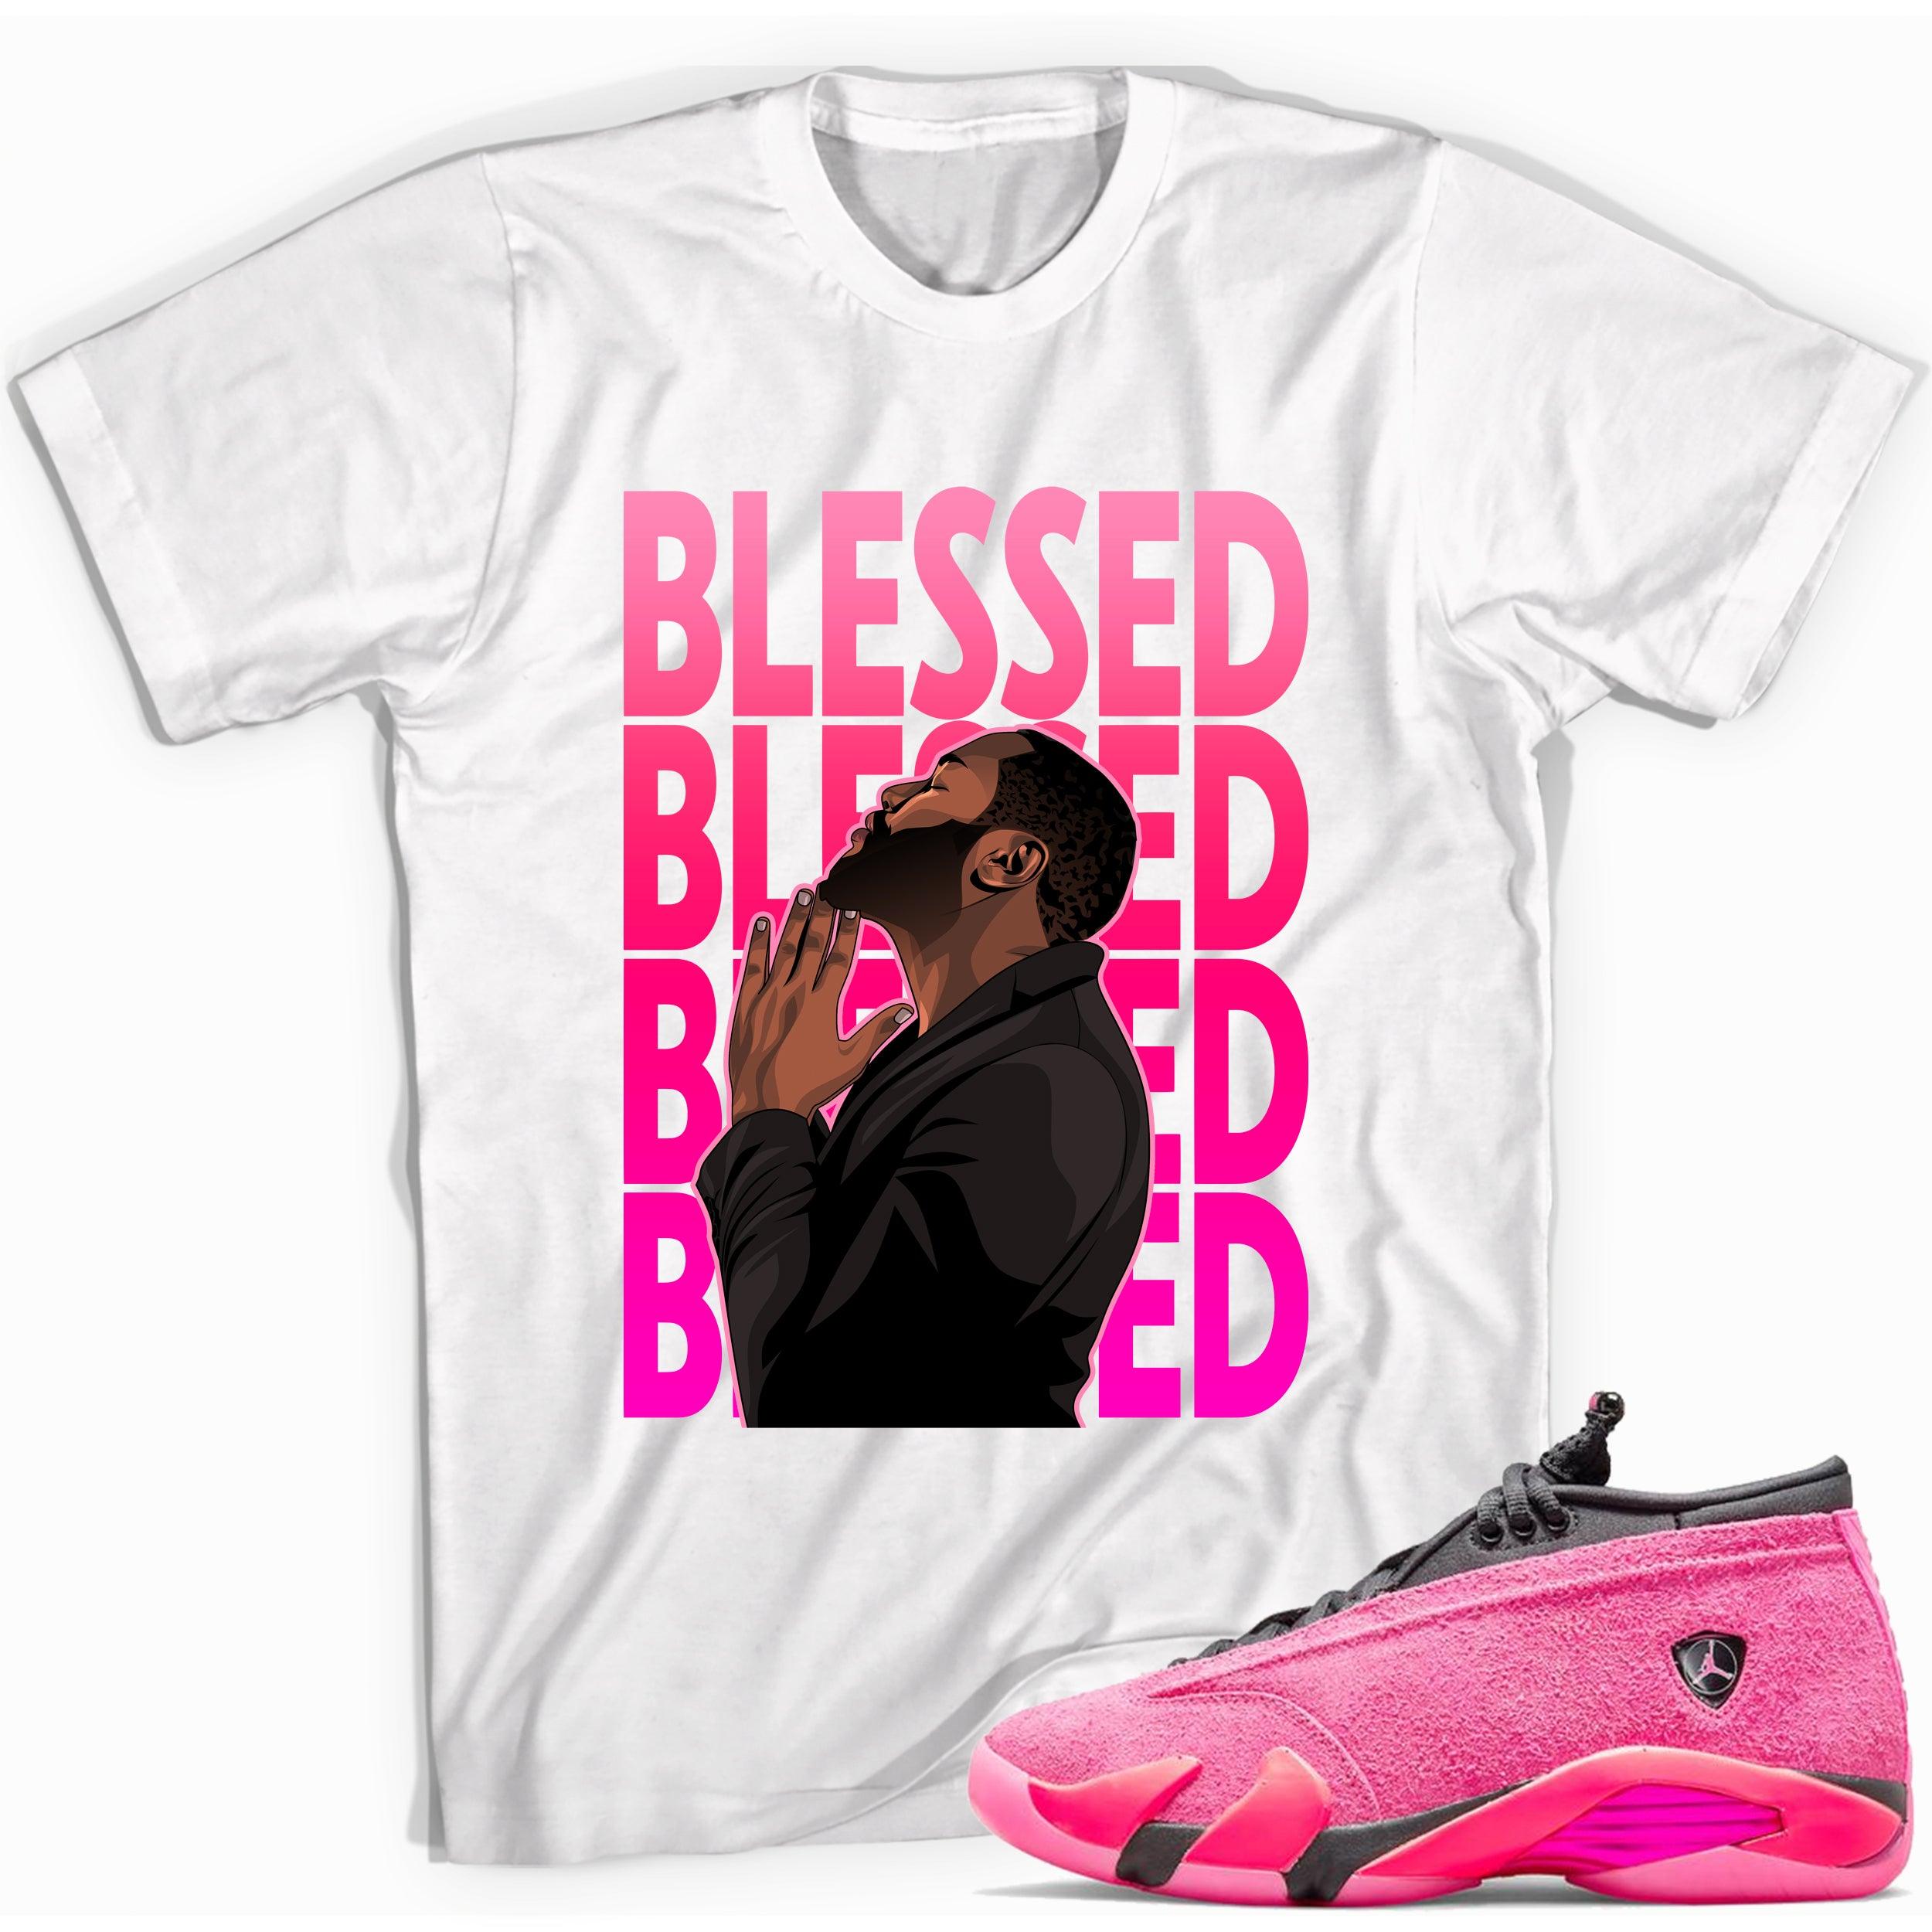 White God Blessed Shirt Jordan 14s Low Shocking Pink photo